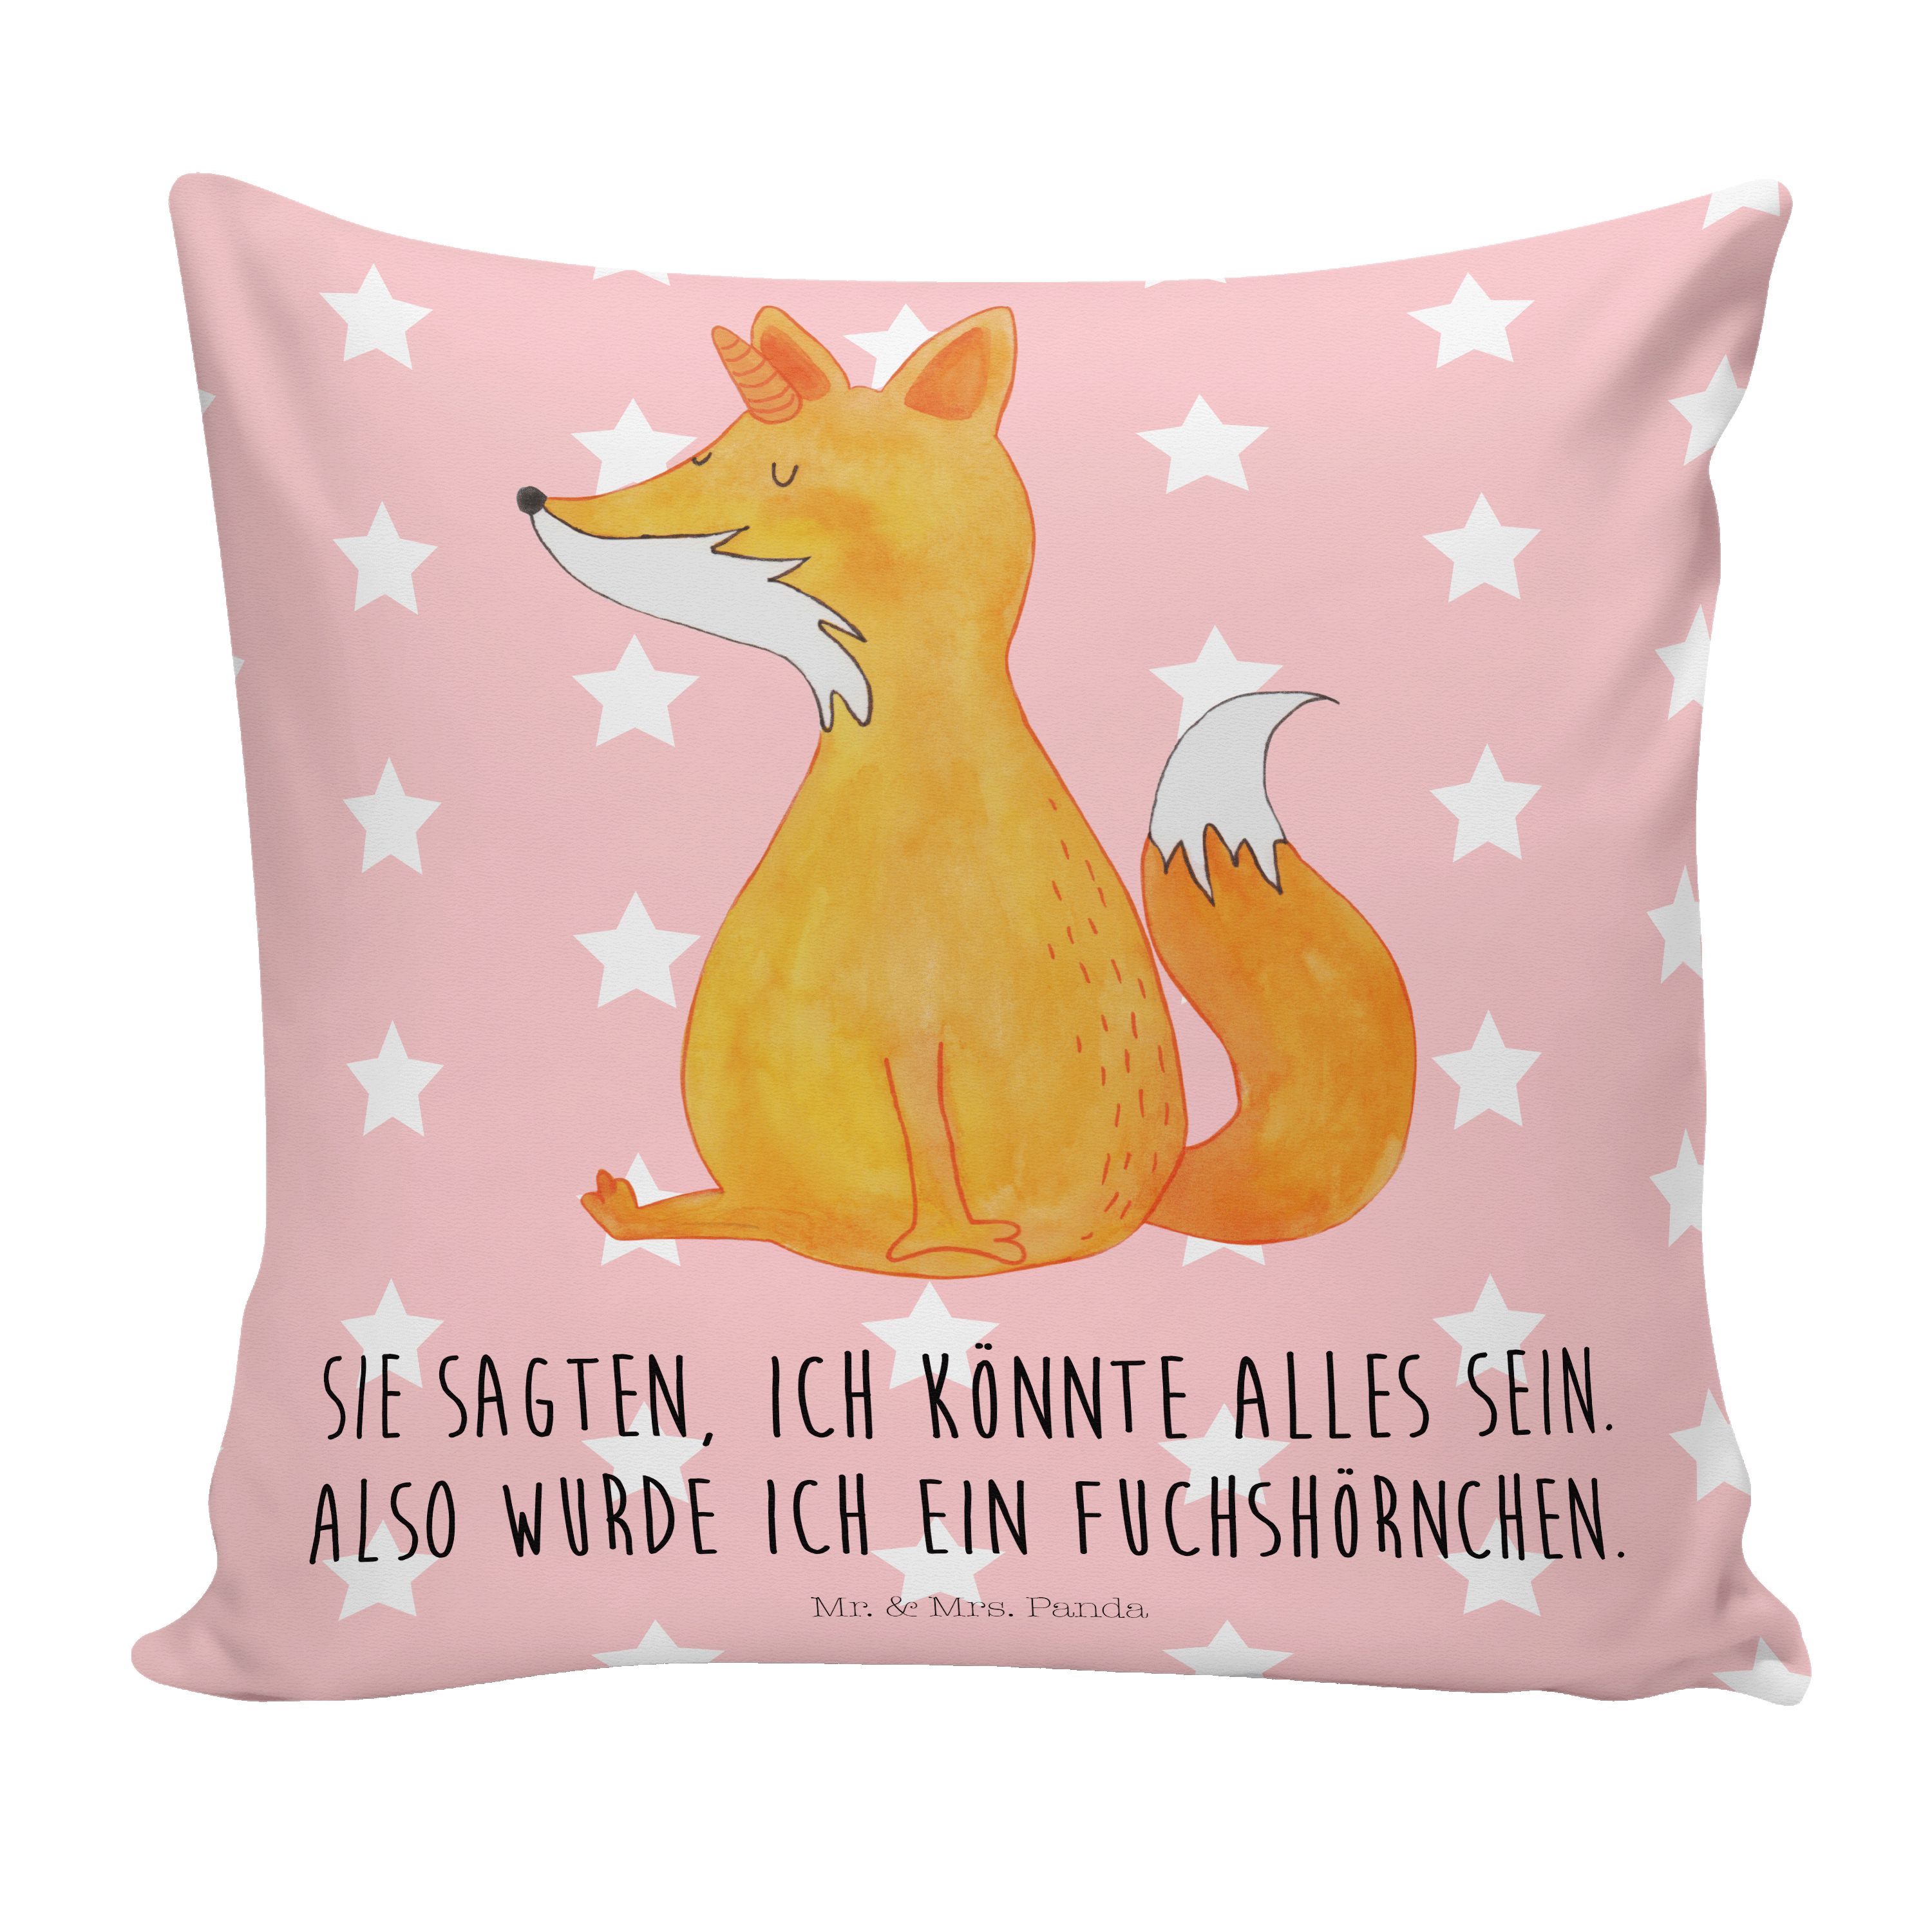 Mr. & Mrs. Panda Dekokissen Fuchshörnchen - Rot Pastell - Geschenk, Sofakissen, Füchse, Motivkiss